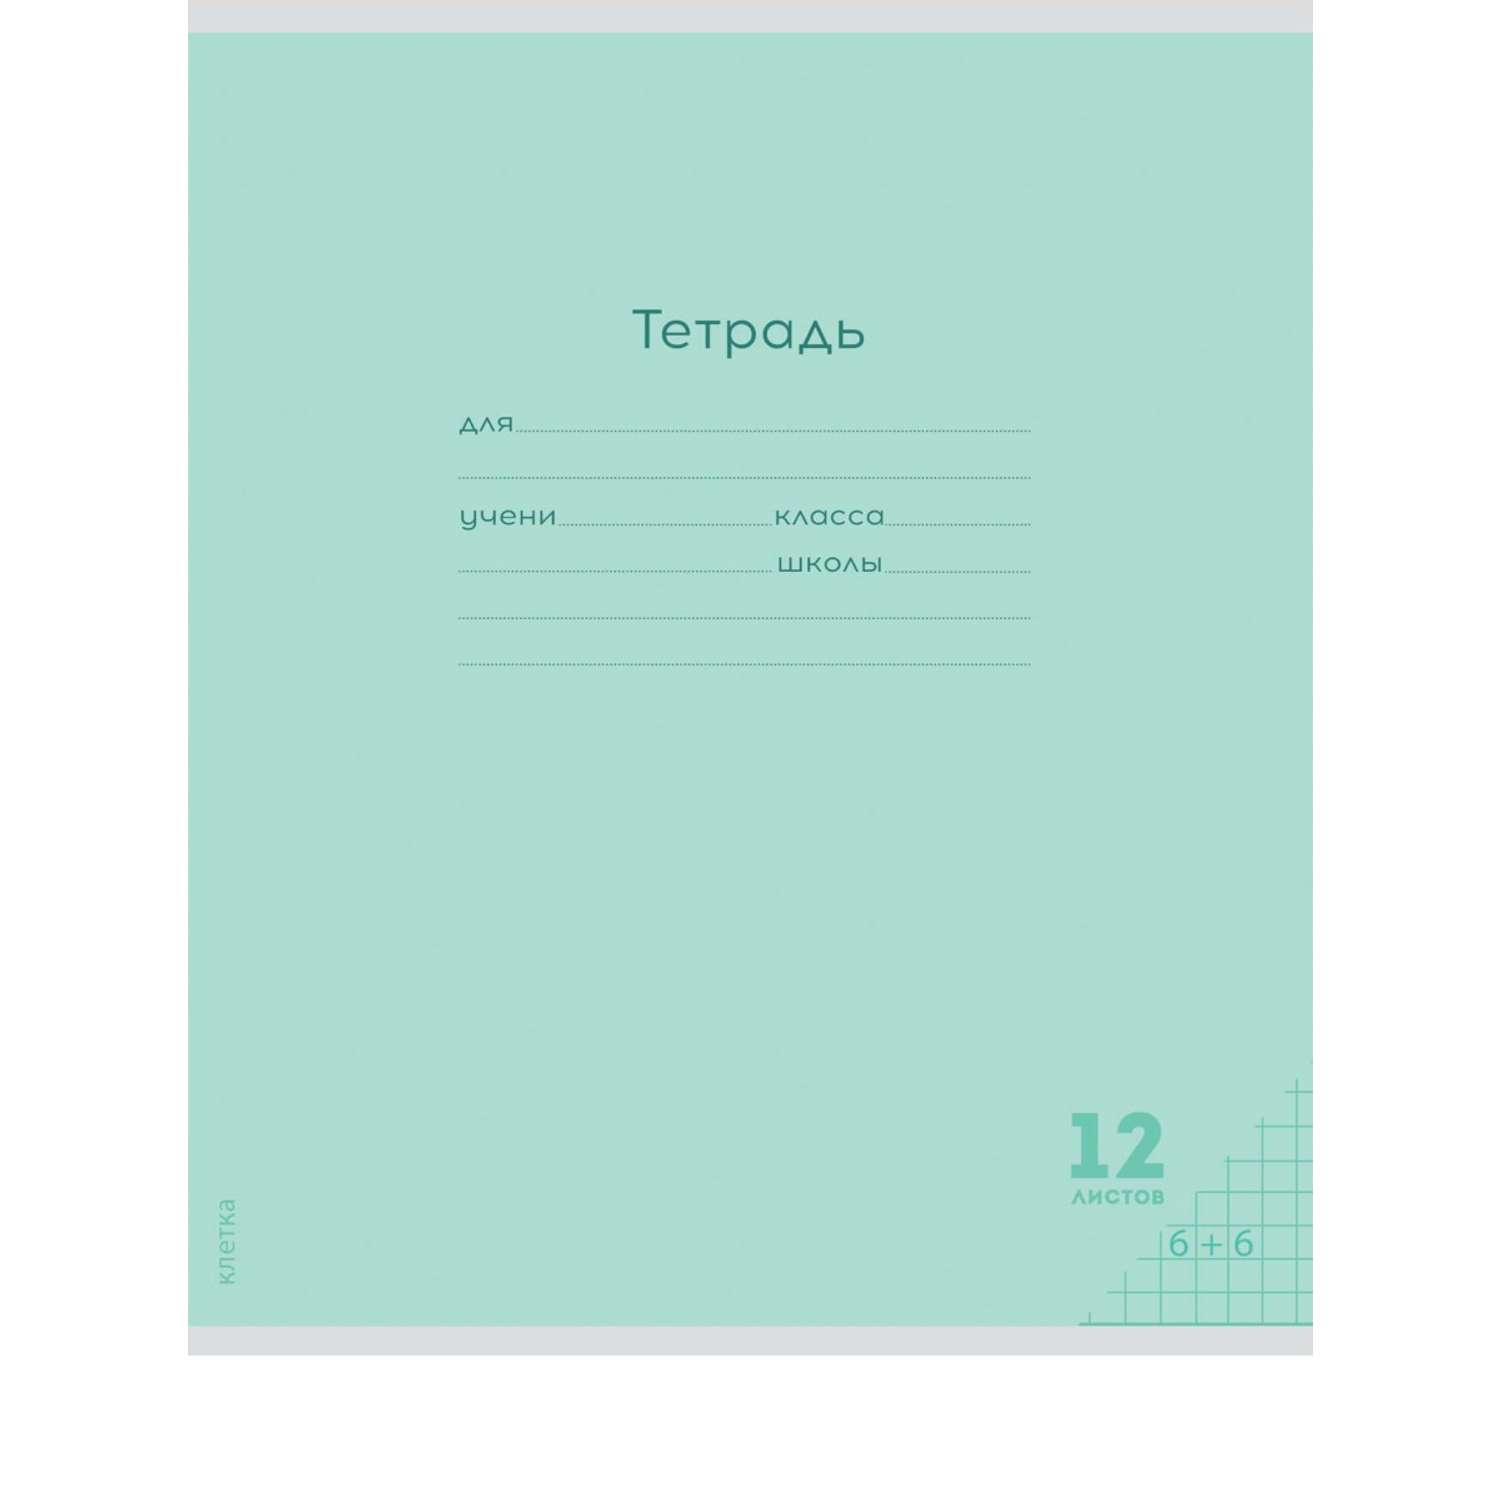 Тетради Prof Press Клетка 12л. классика цветная мелованная обложка комплект 10 штук - фото 6